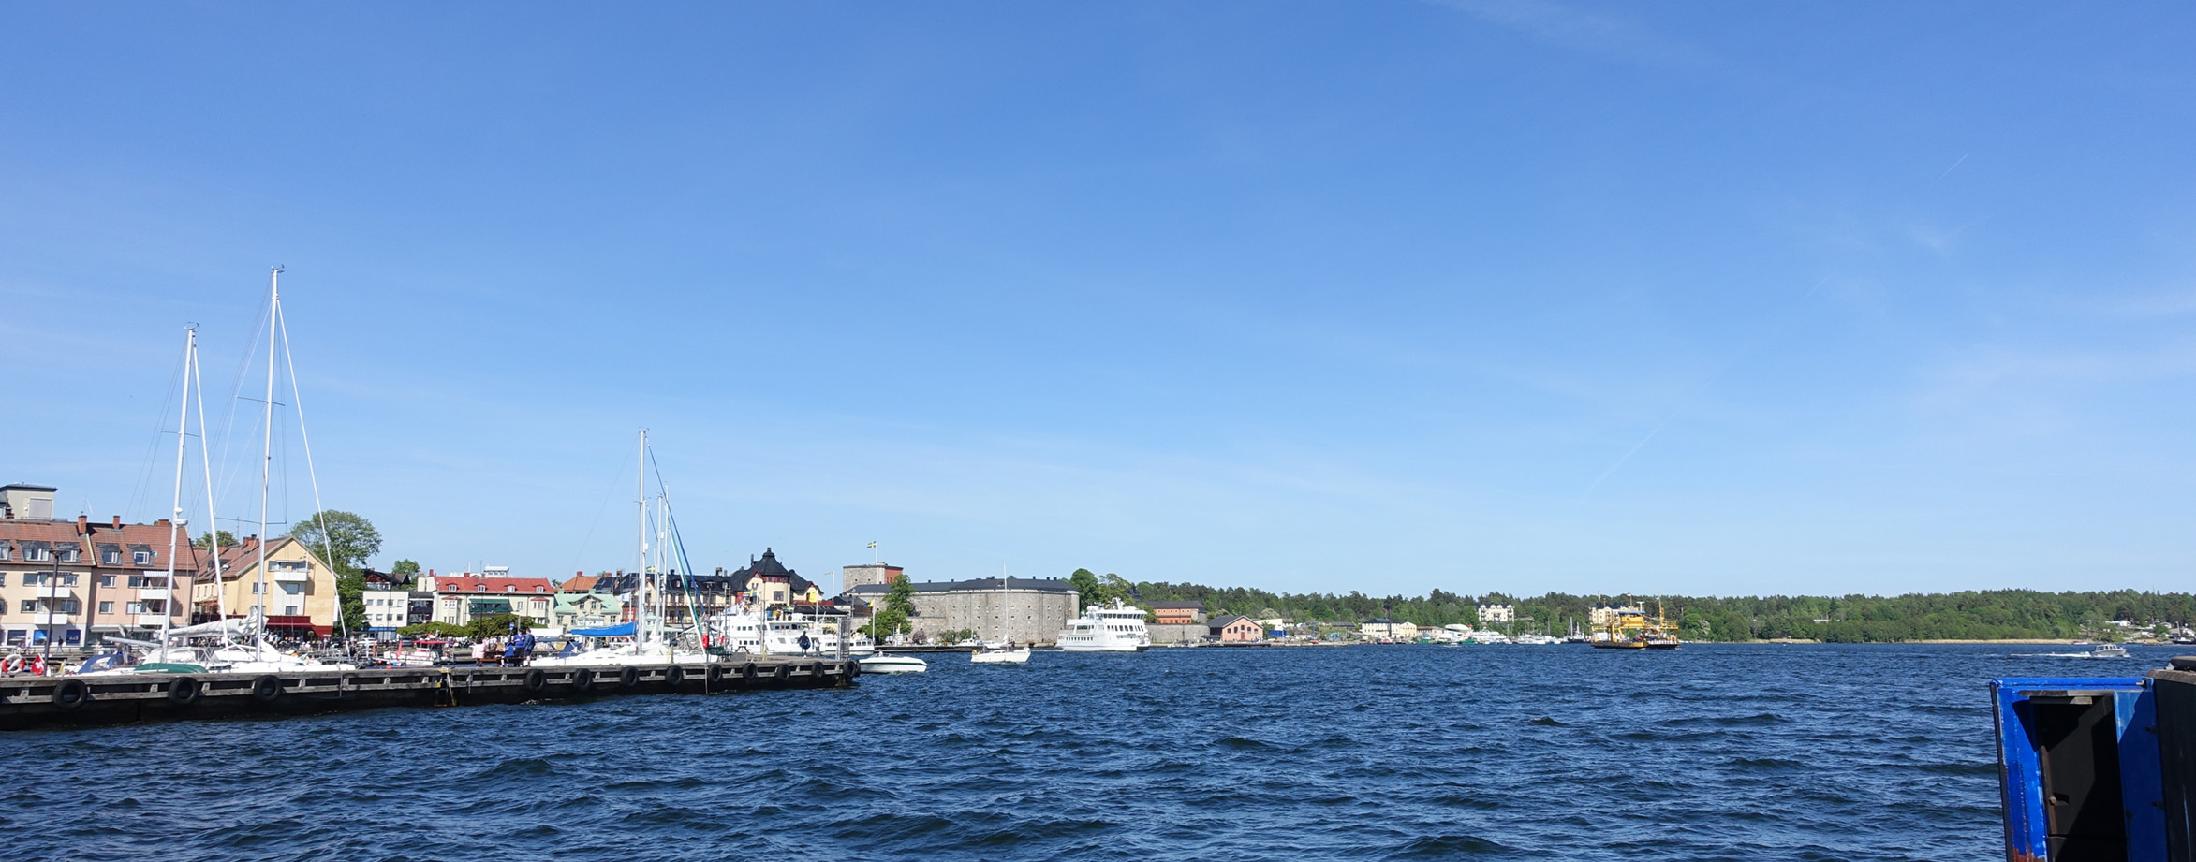 sommarquiz frågor om platser och personer i Sverige. Bilden med hav och båtar visar Vaxholms hamn och längre bort Vaxholms fästning